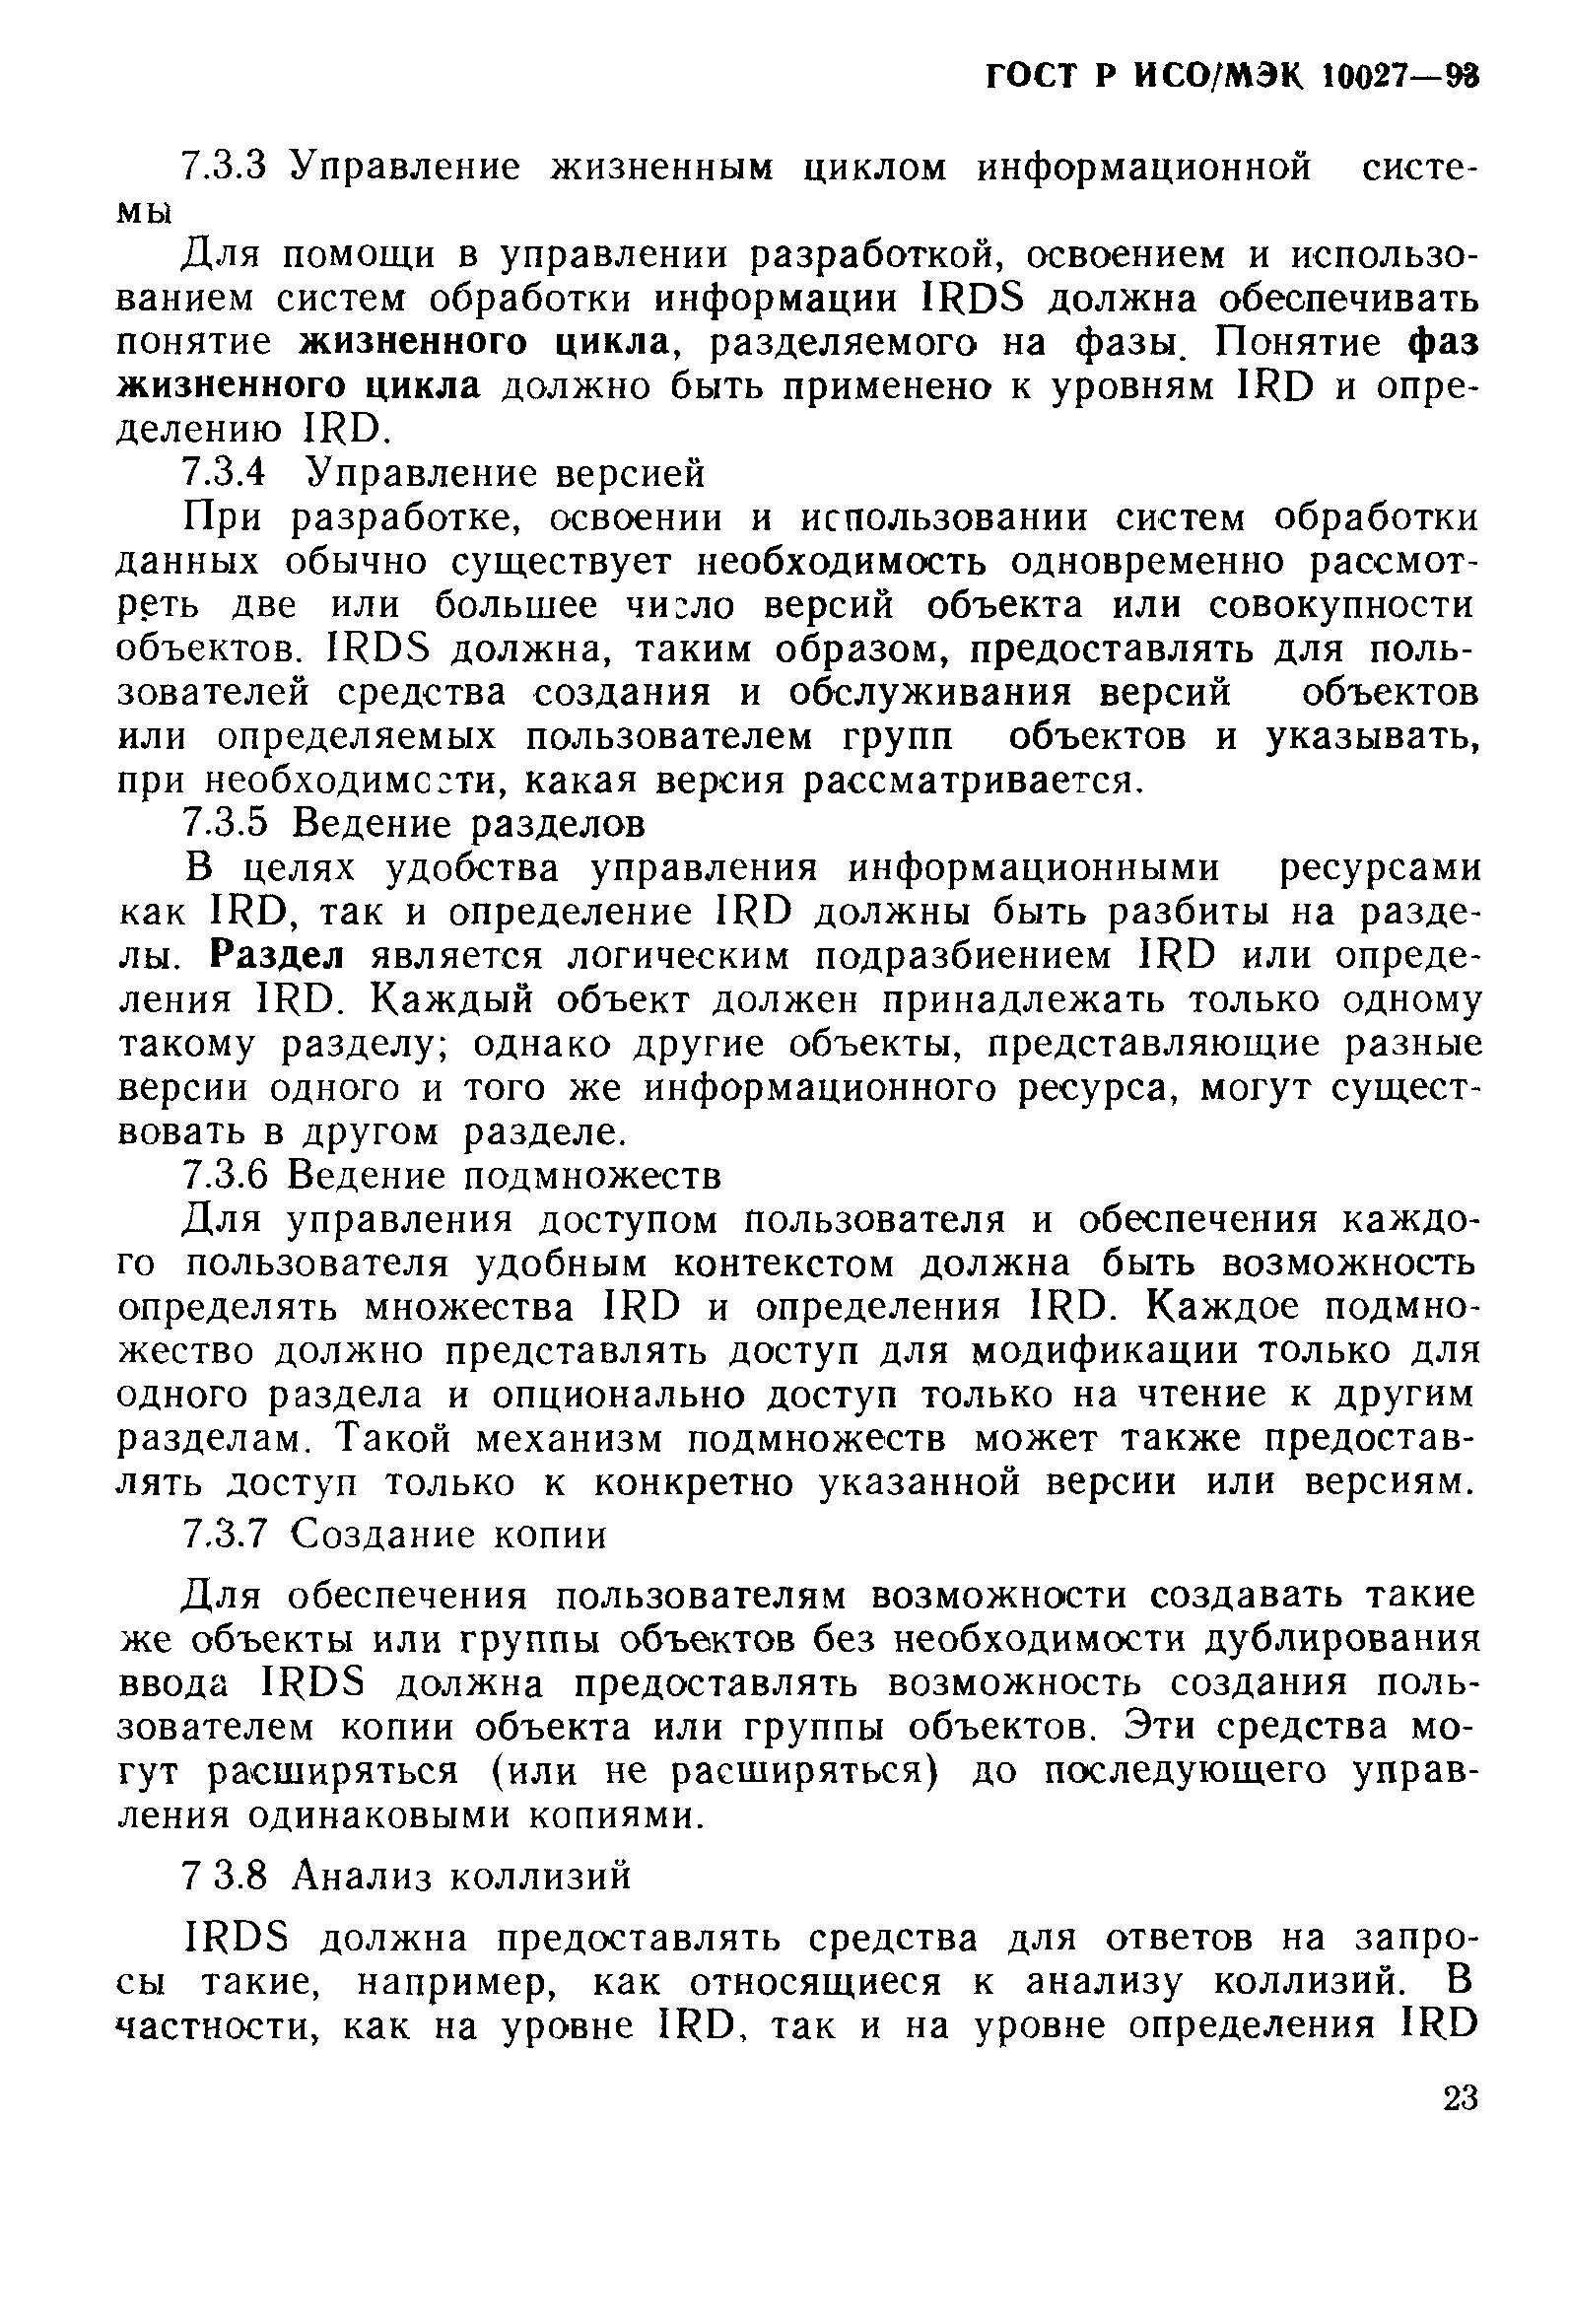 ГОСТ Р ИСО/МЭК 10027-93